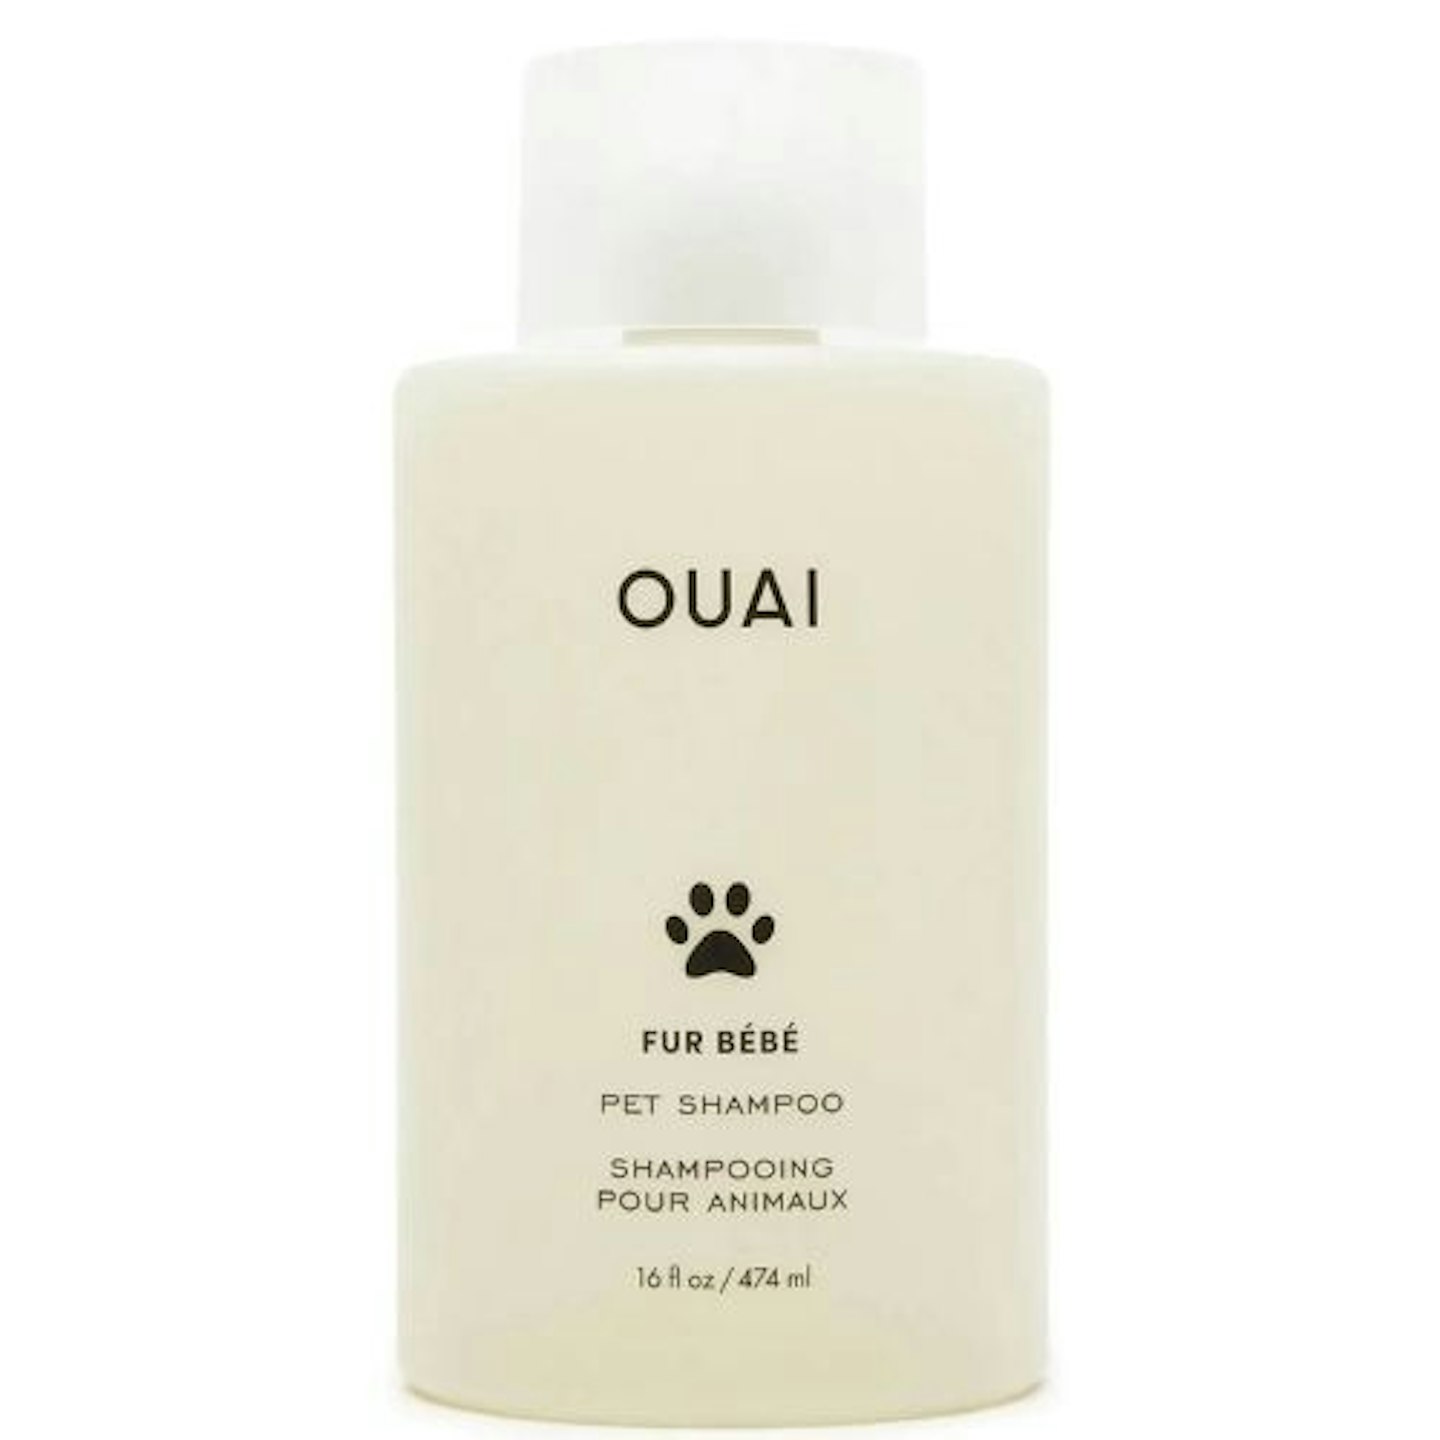 OUAI Fur Bébé Pet Shampoo